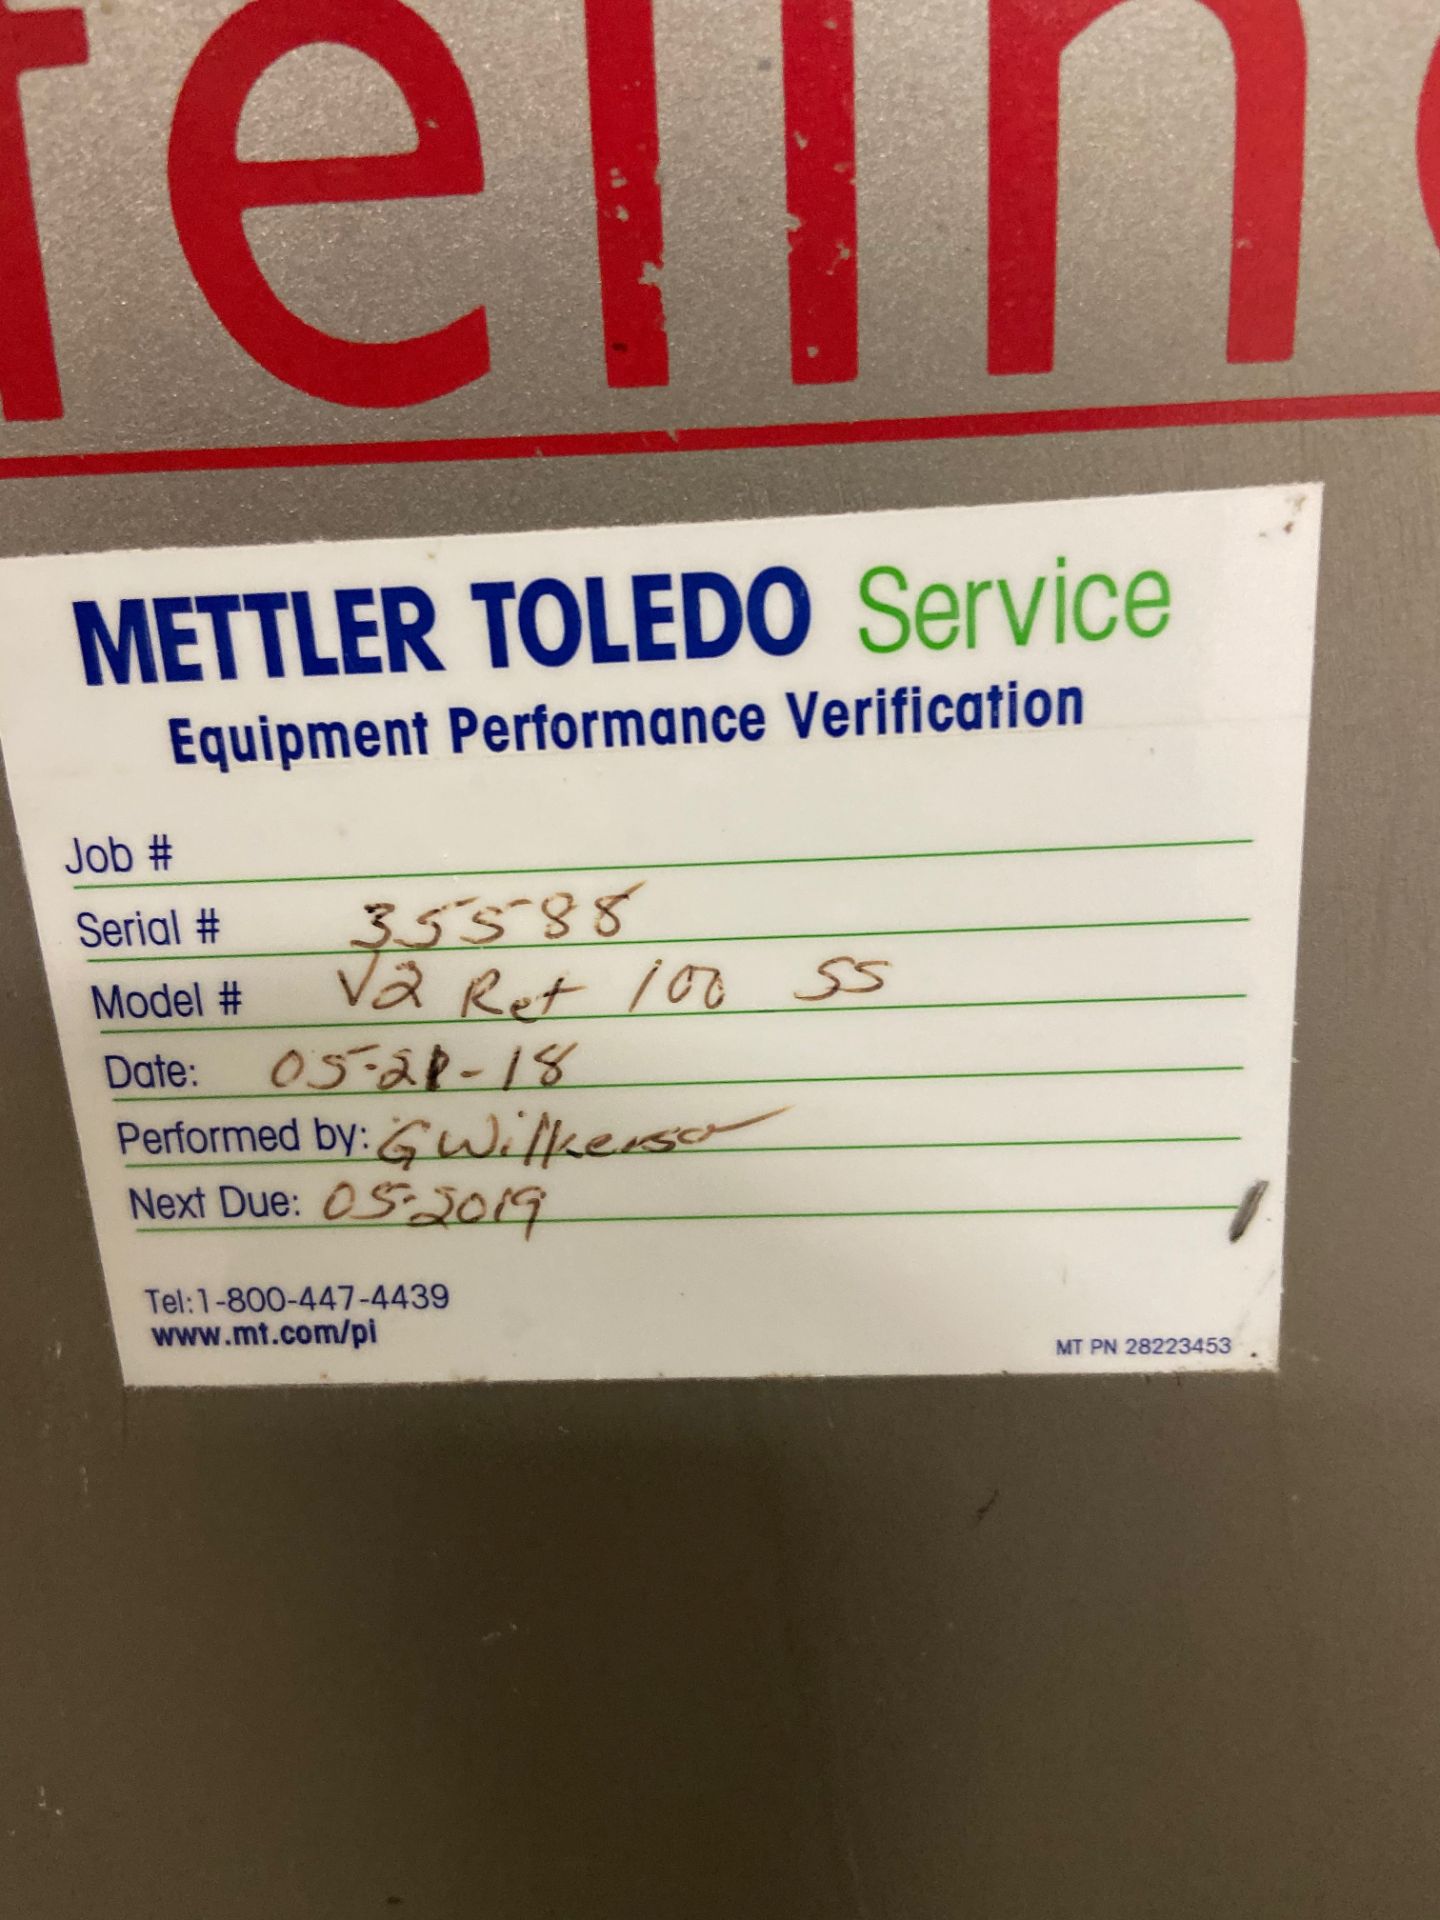 Safeline Metal Detector, Model# V3 Ret 100SS, Serial# 35588, Aperture 21.5" wide x 14" tall - Image 5 of 6